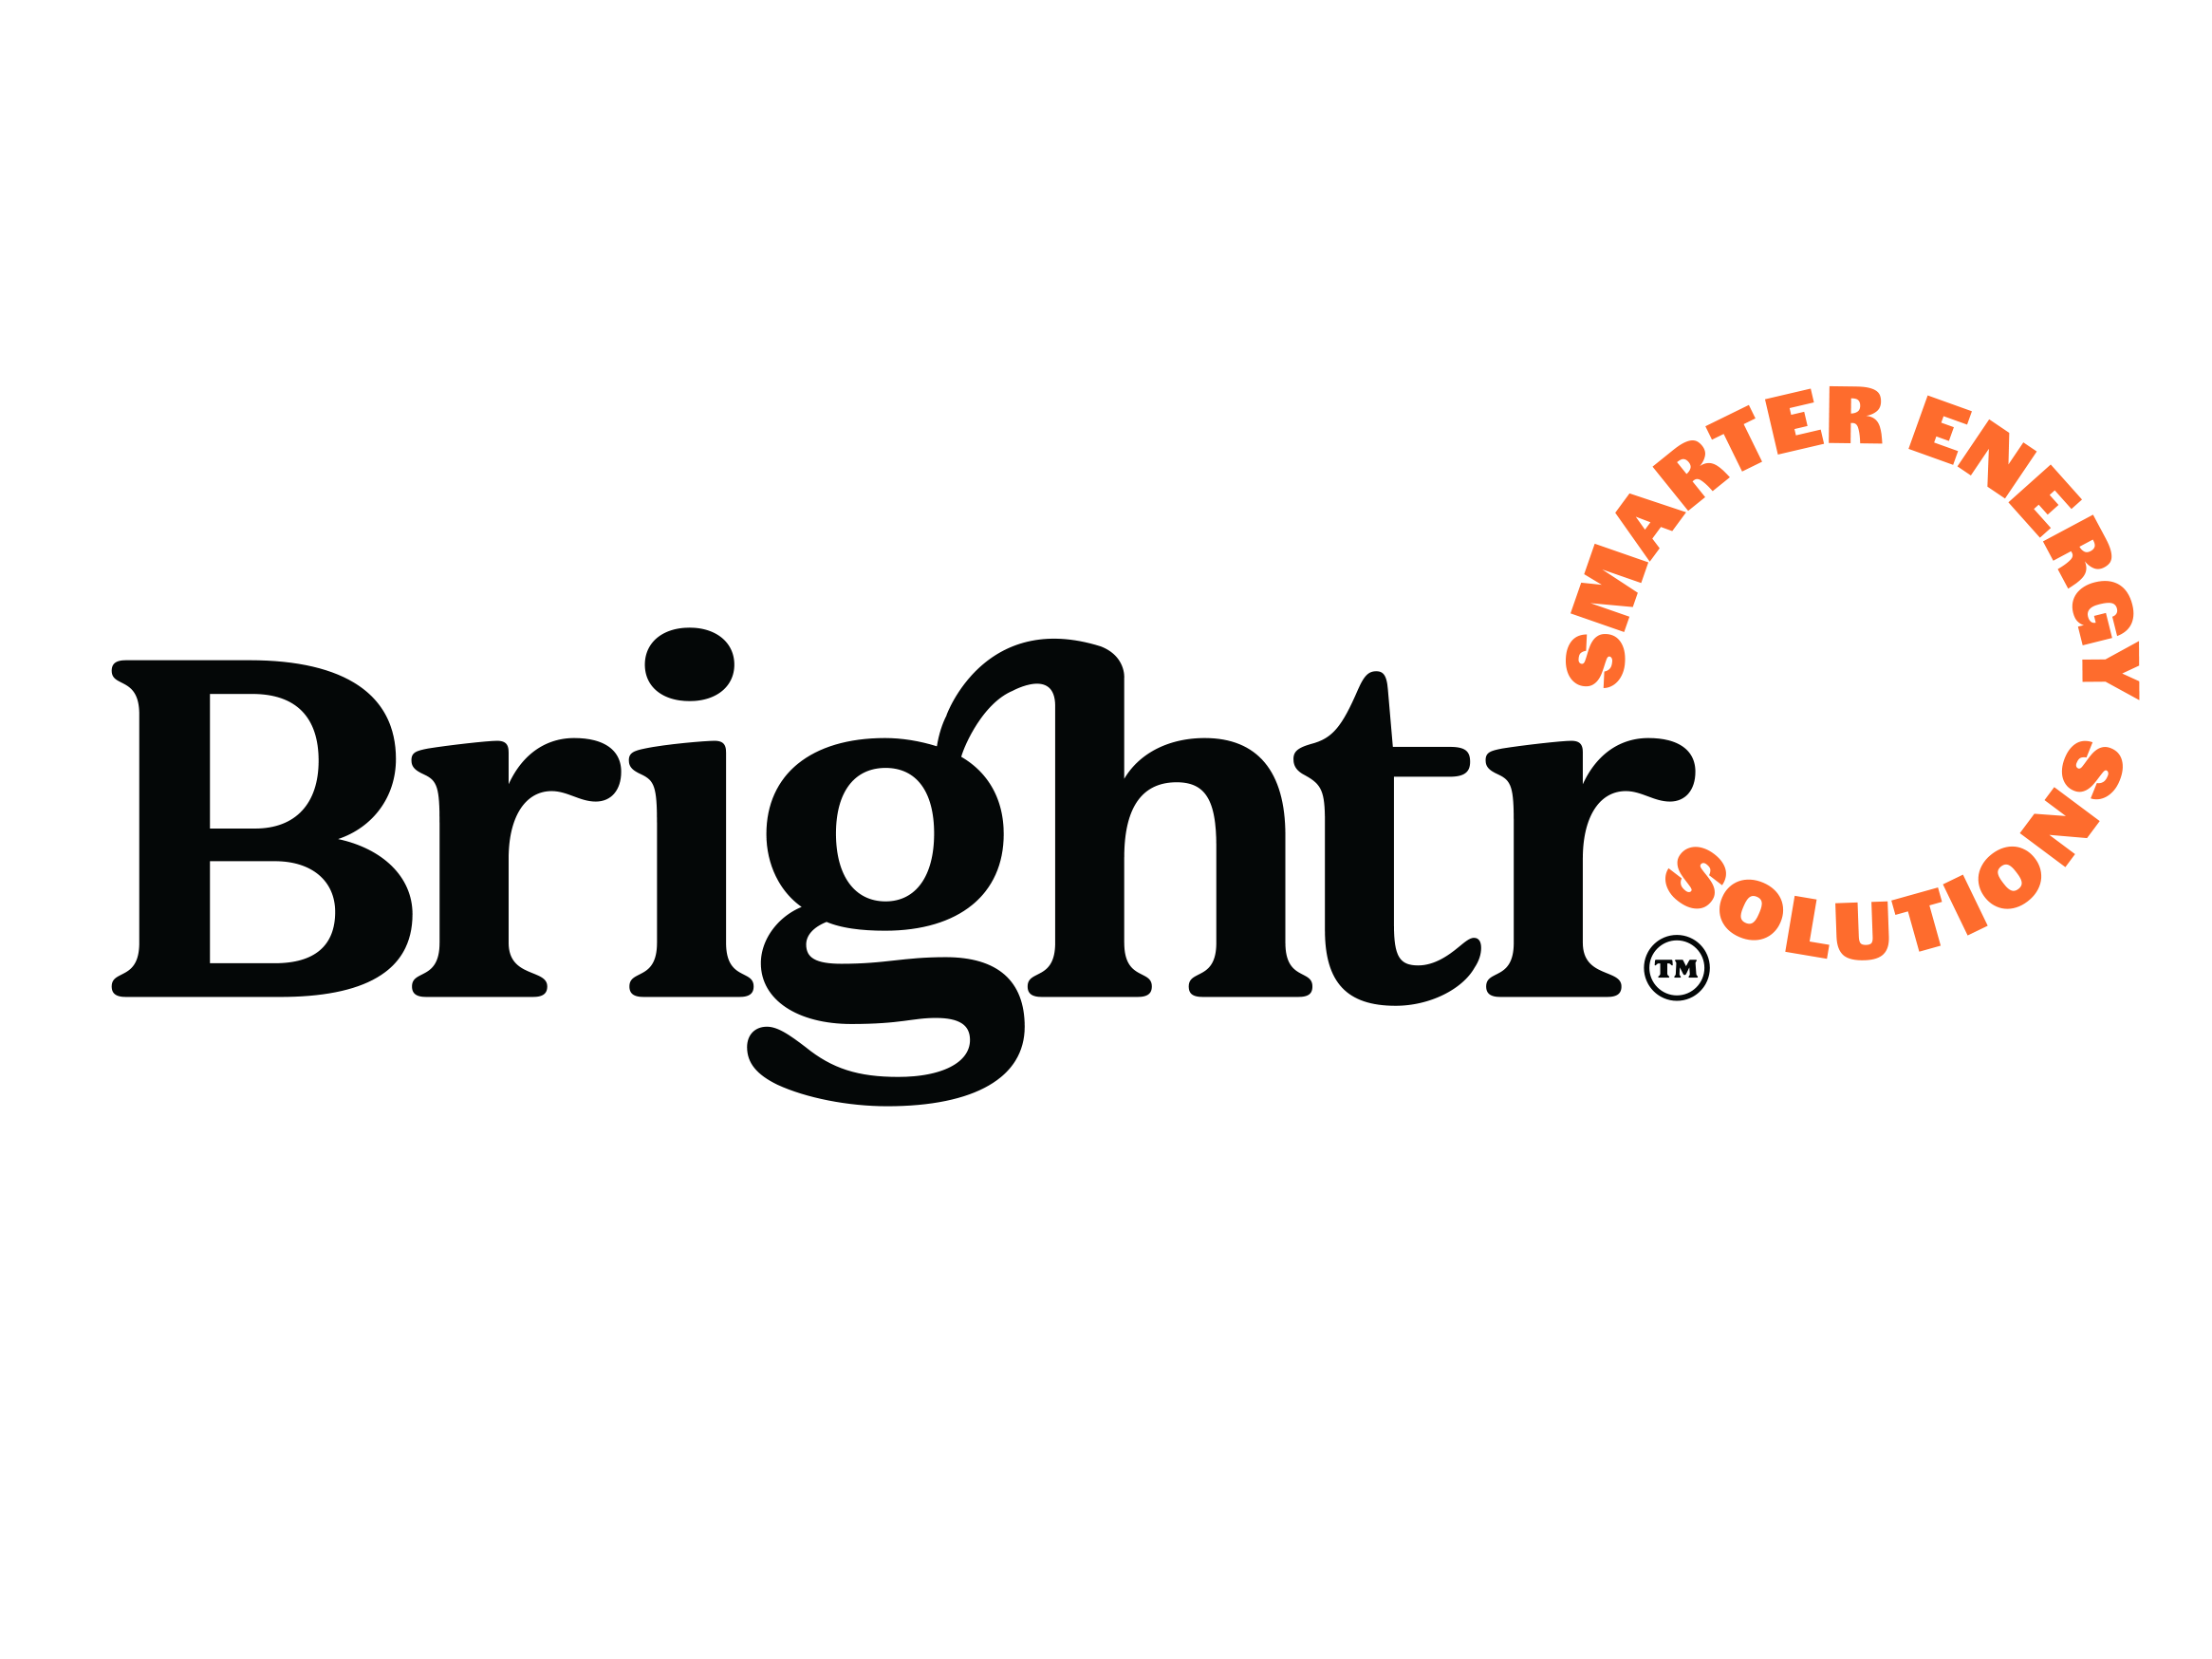 Business logo for Brightr